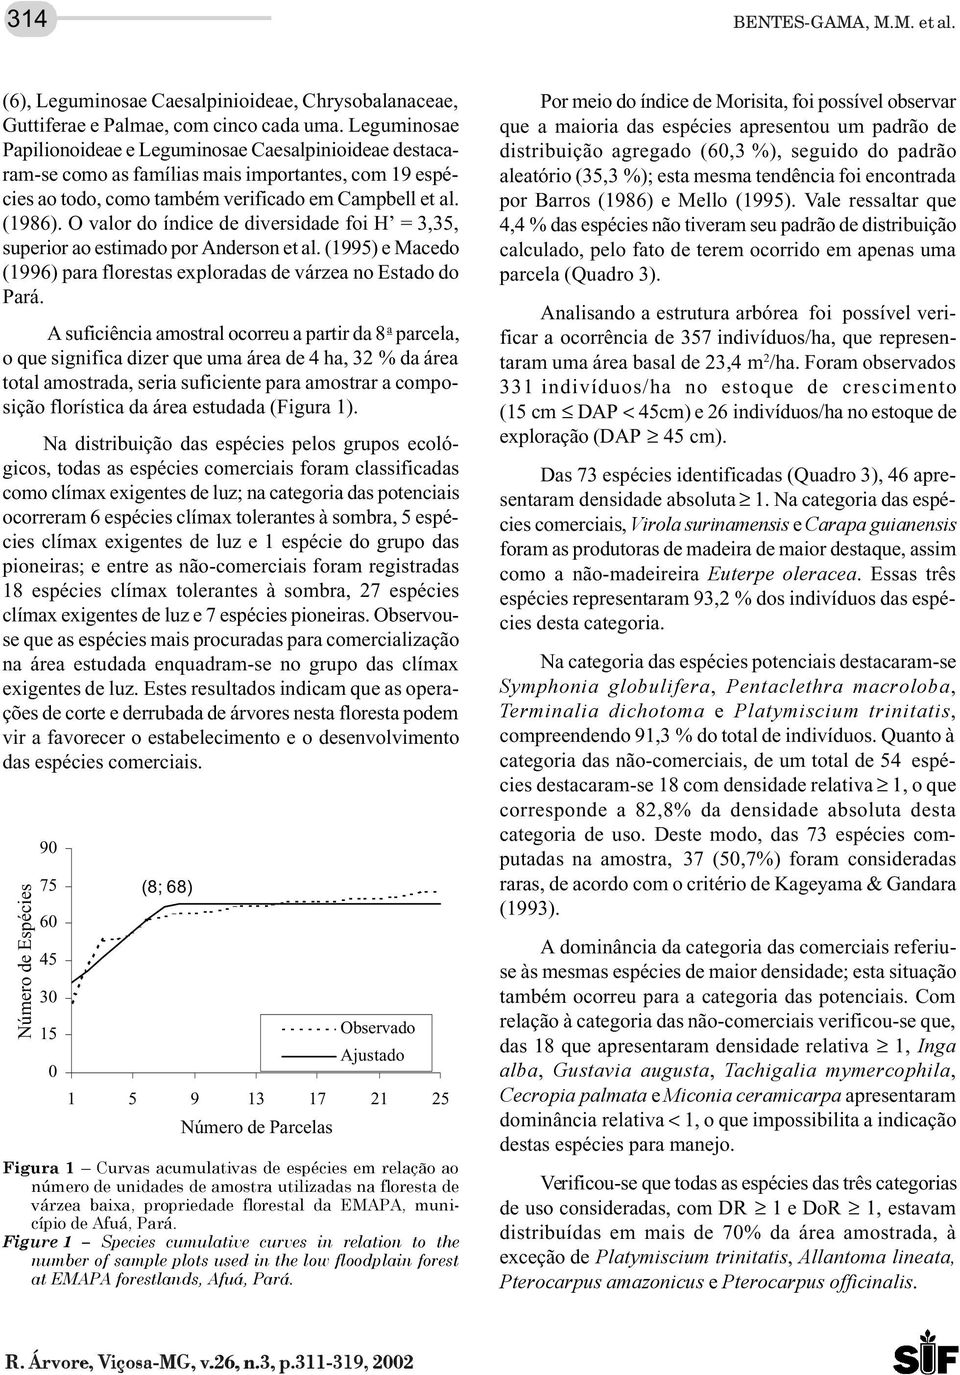 O valor do índice de diversidade foi H = 3,35, superior ao estimado por Anderson et al. (1995) e Macedo (1996) para florestas exploradas de várzea no Estado do Pará.